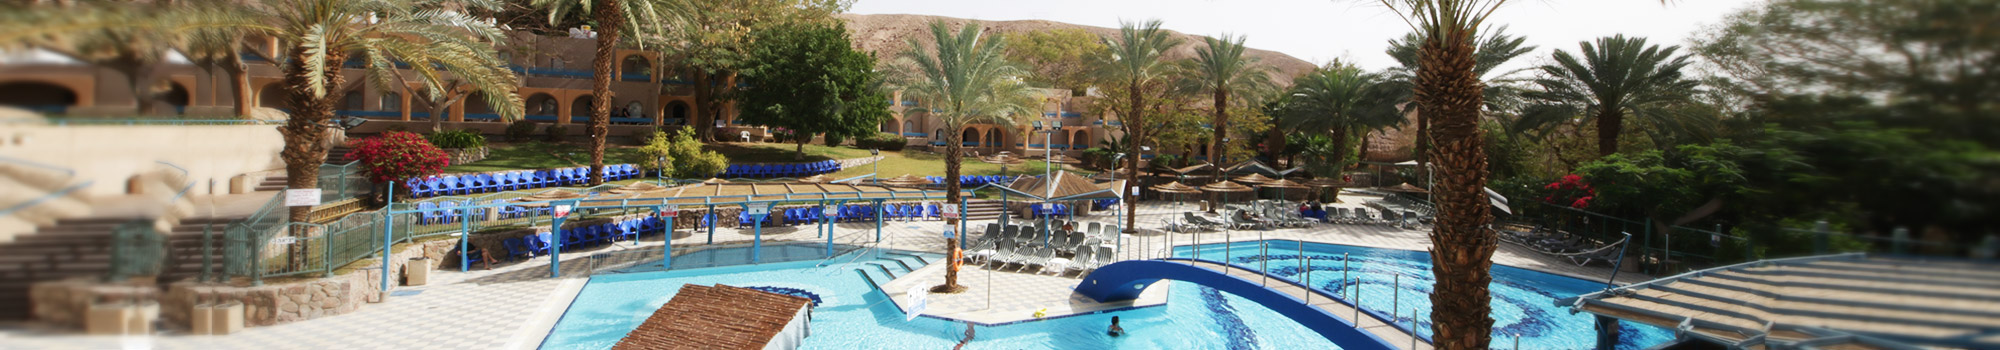 Club In Eilat  Israel - The pool